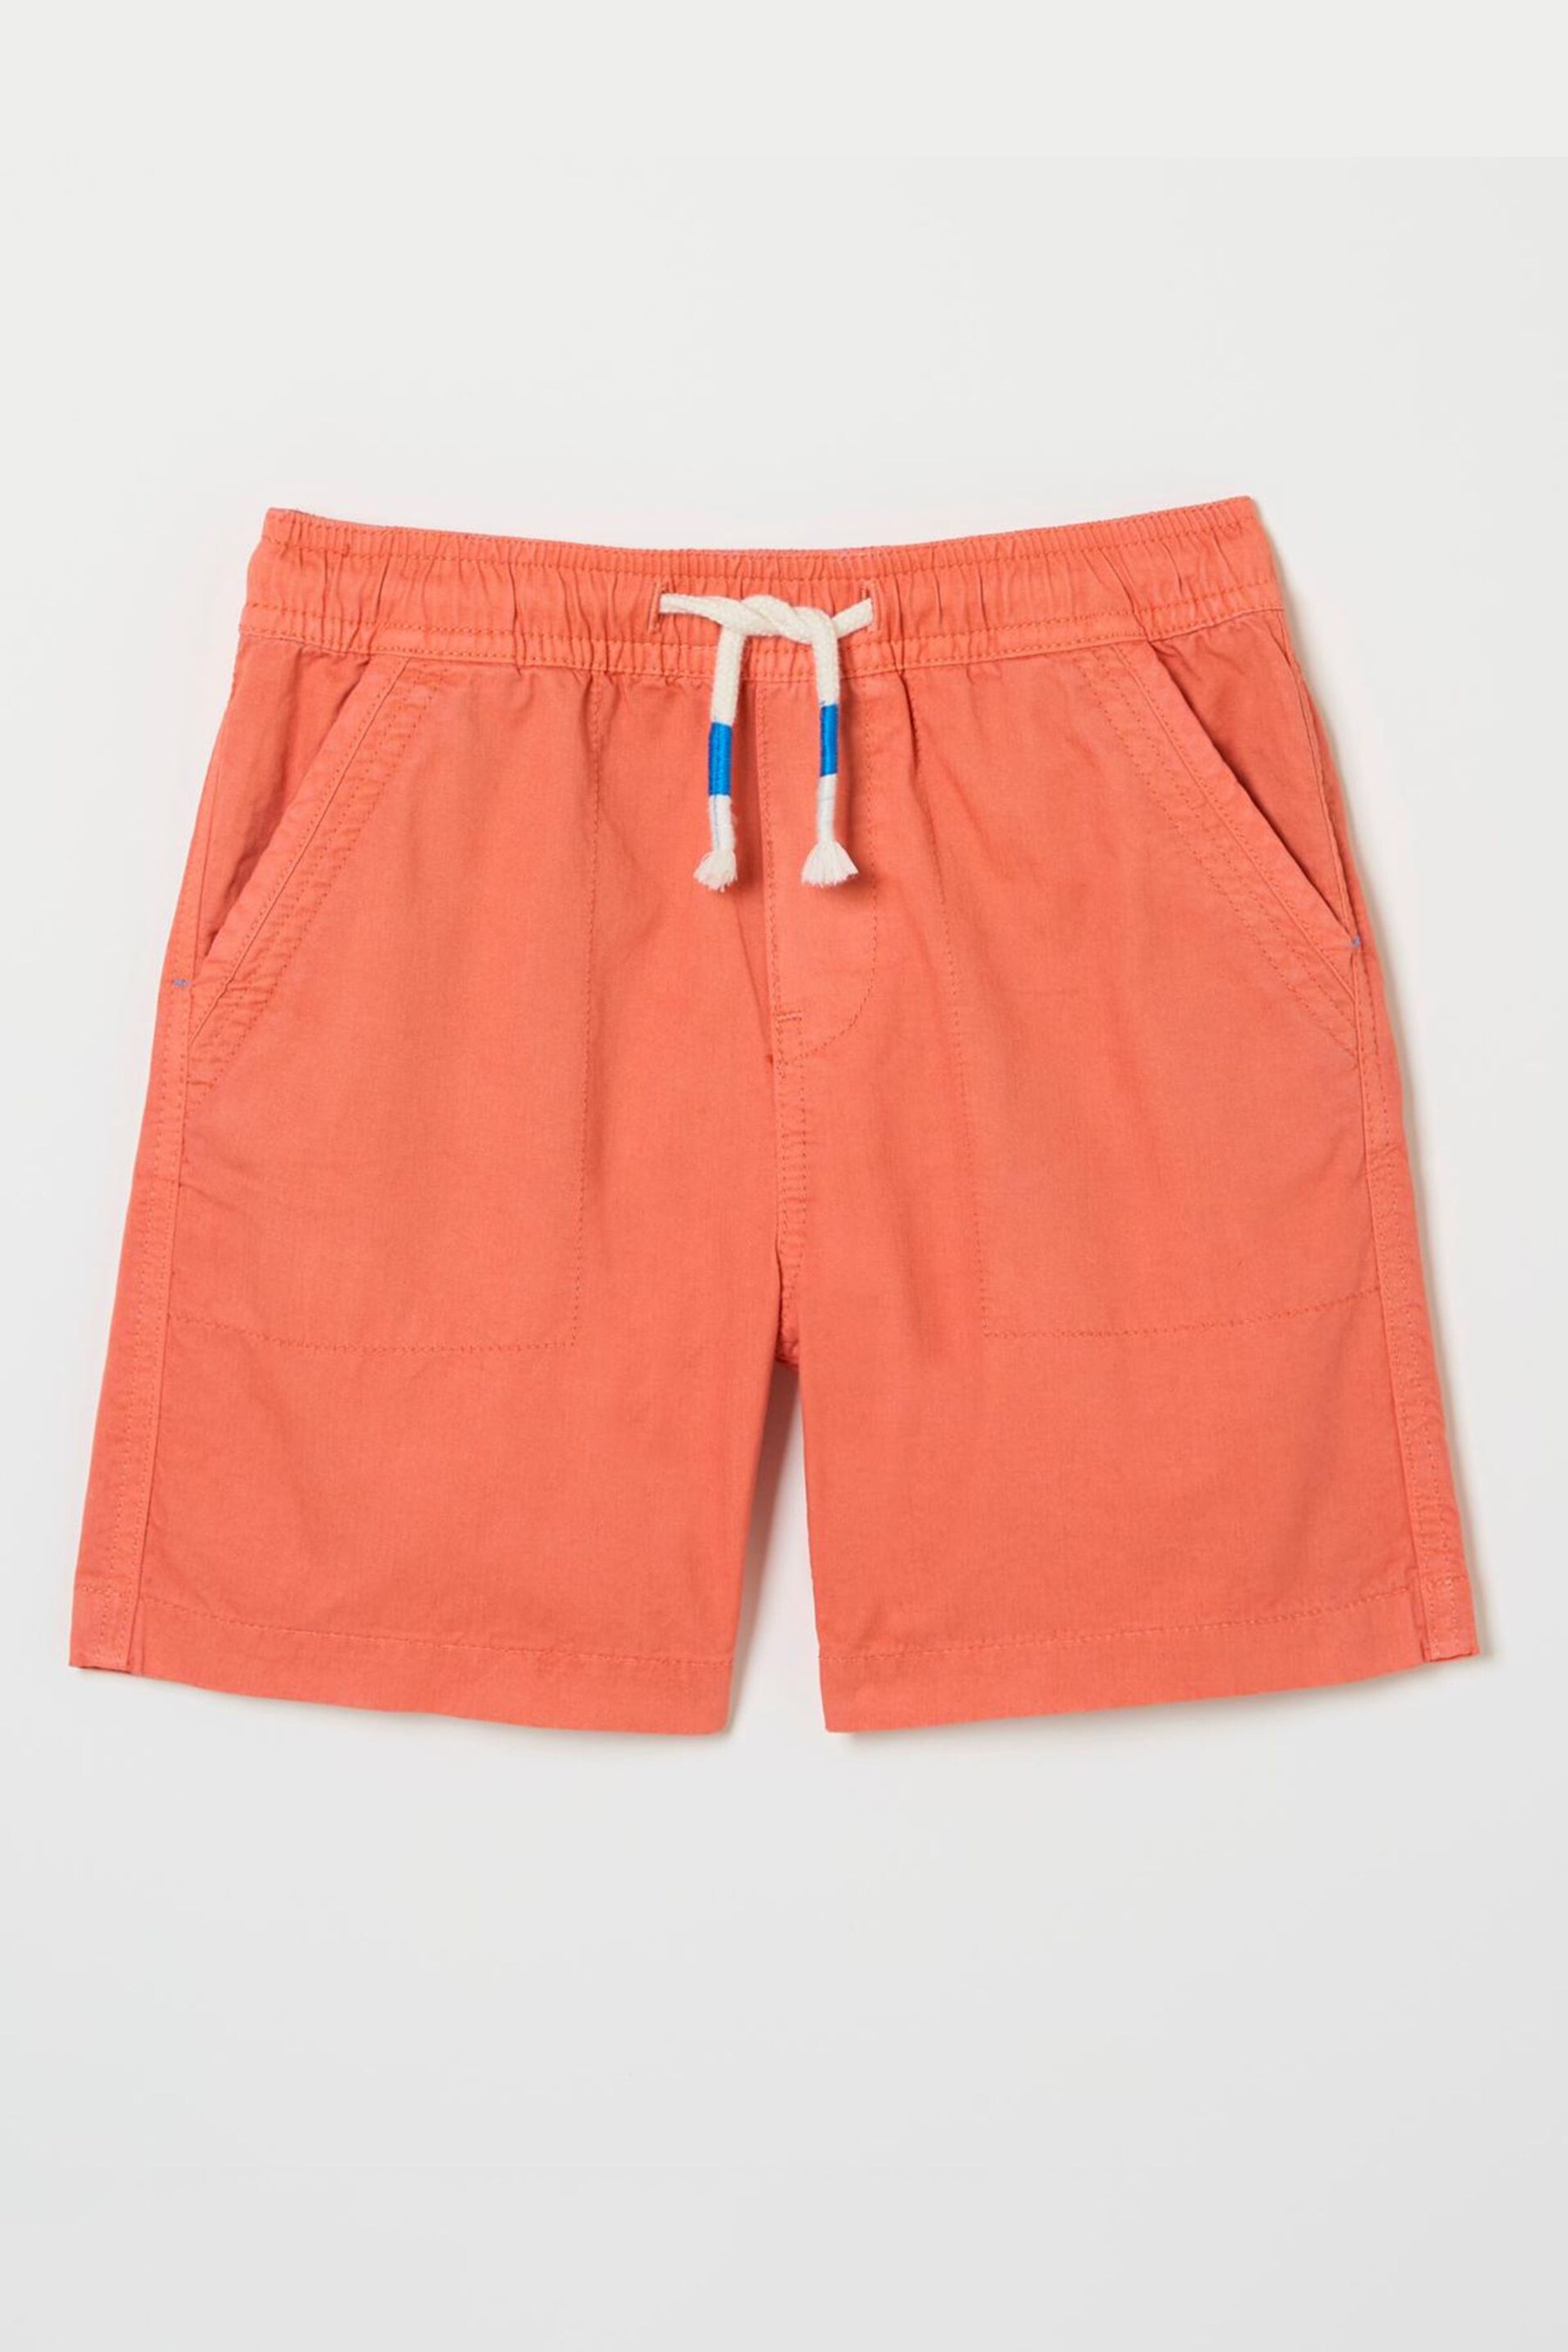 FatFace Orange Studland Pull On Shorts - Image 4 of 4